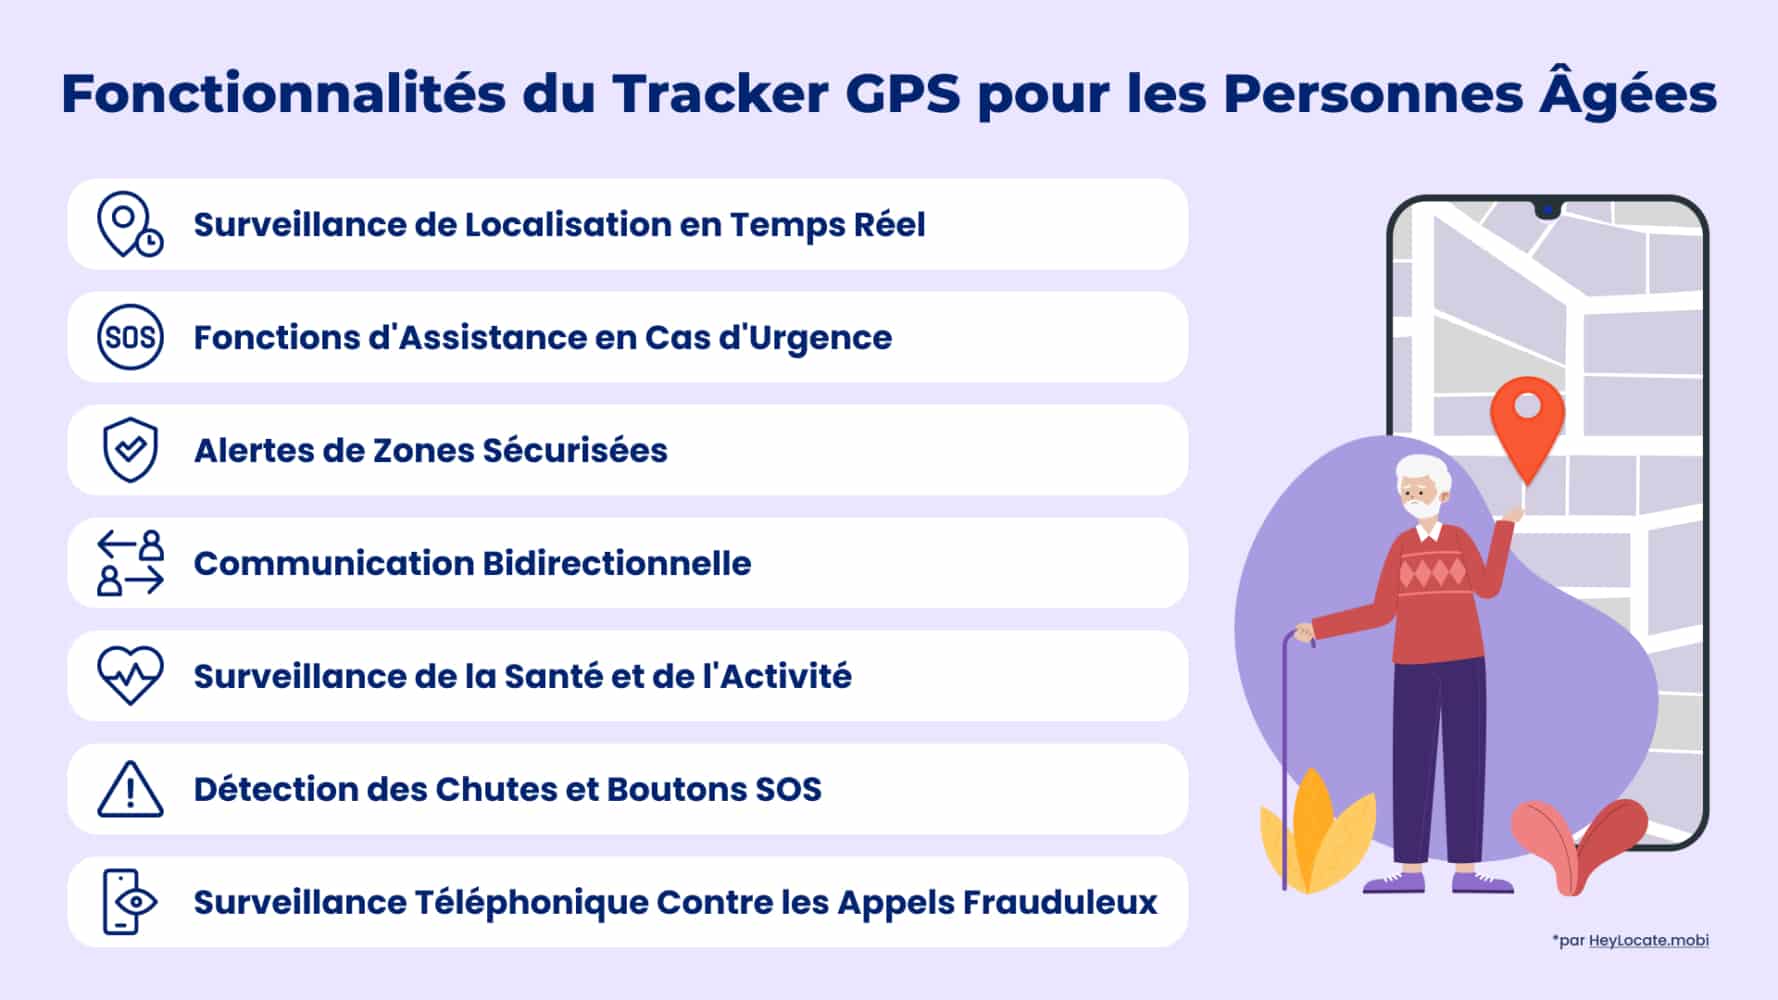 Liste des principales fonctionnalités des traceurs GPS pour personnes âgées présentées dans l'infographie de HeyLocate
